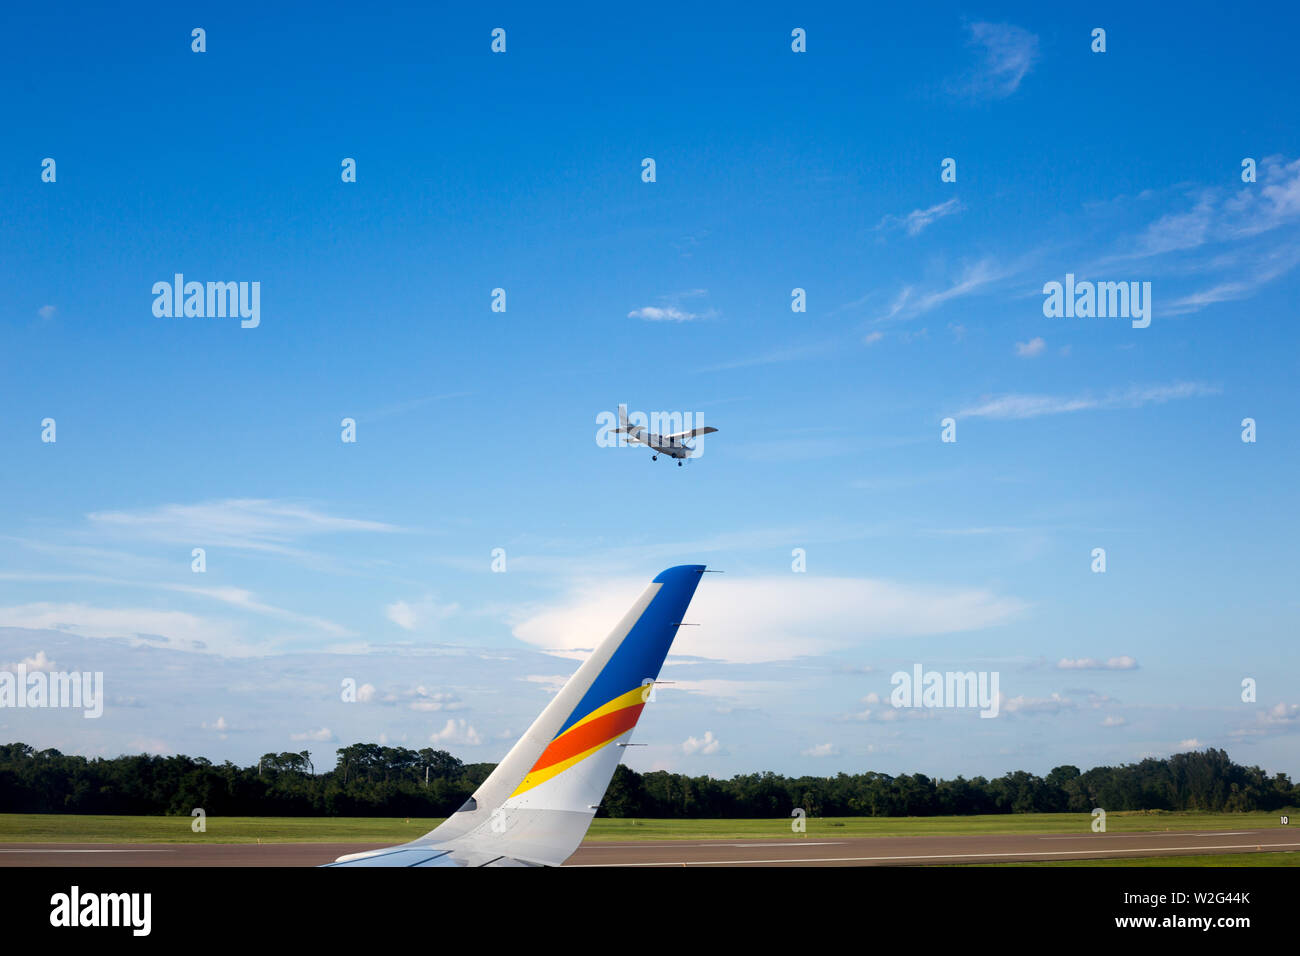 Un petit avion atterrit juste au-delà de l'aile d'un Airbus A320 Allegiant avion de ligne à l'Aéroport International d'Orlando Sanford à Sanford, en Floride, aux États-Unis. Banque D'Images